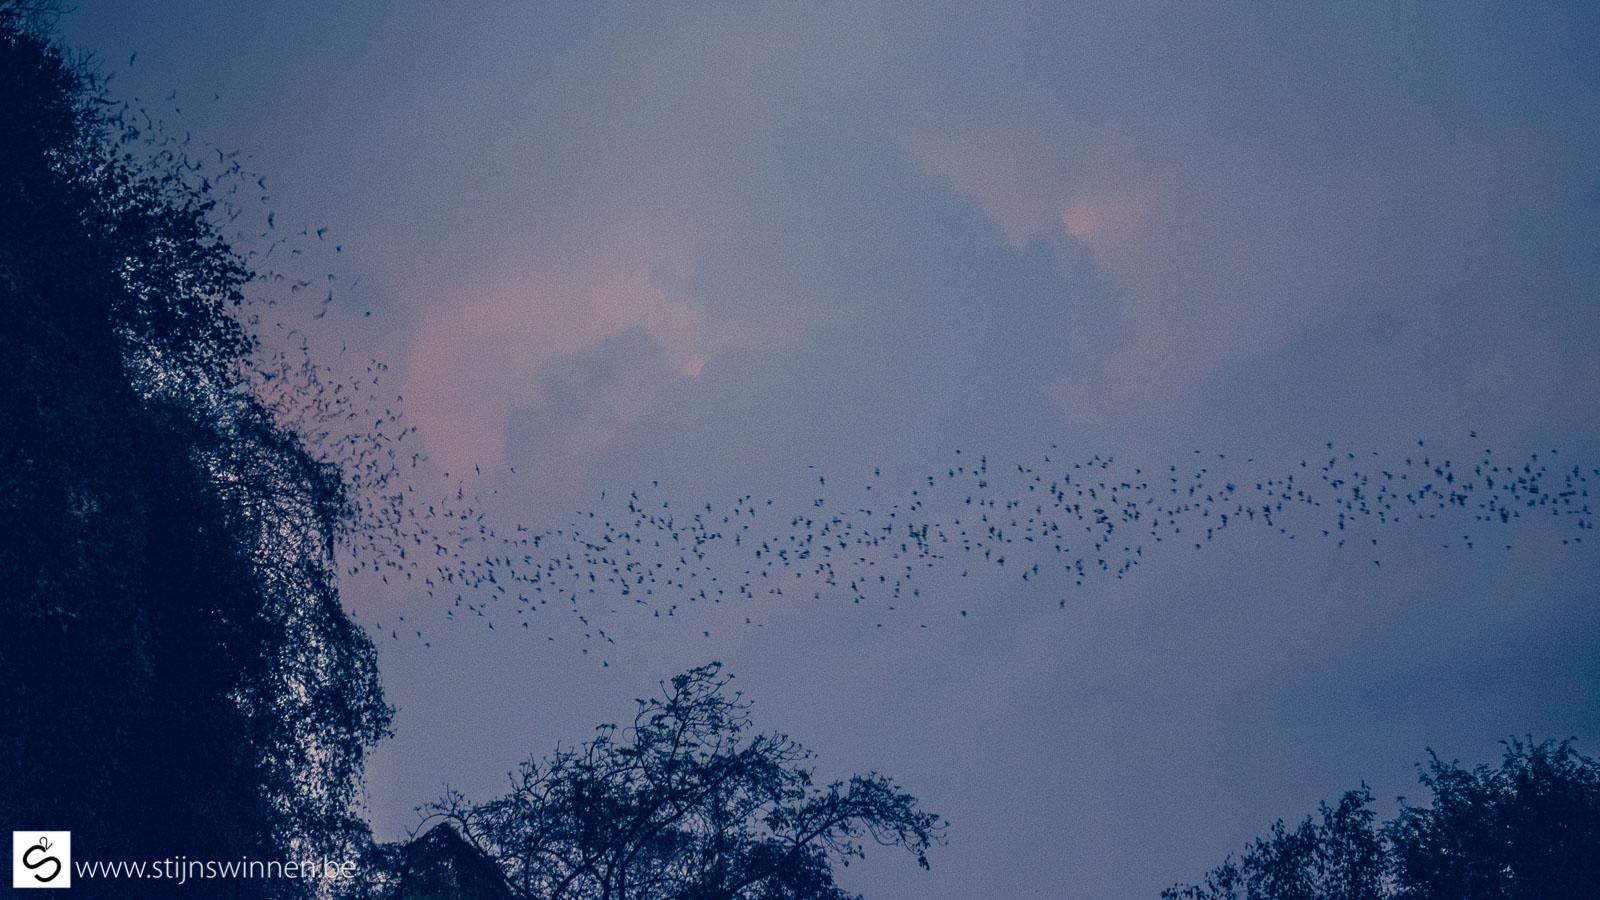 BATtambang - What you see are bats